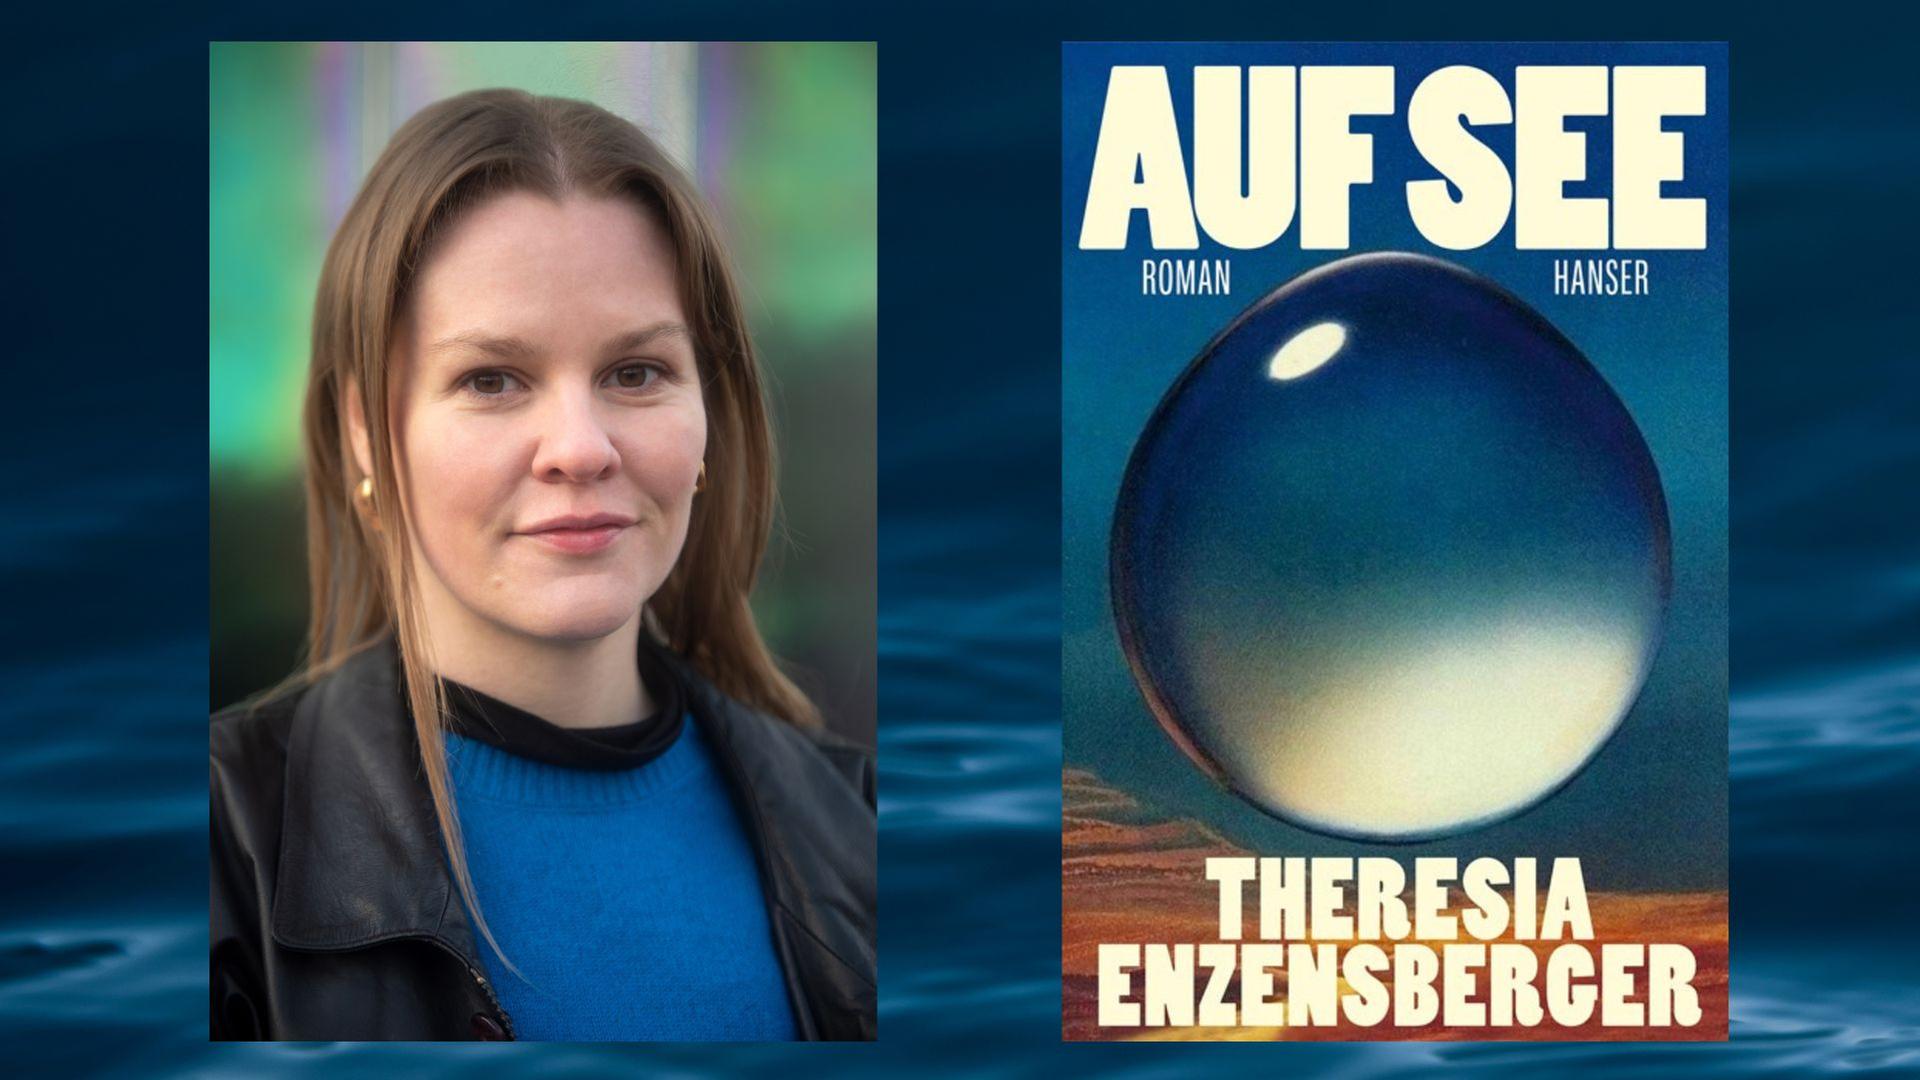 Theresia Enzensberger: "Auf See"
Zu sehen sind die Autorin und das Buchcover
